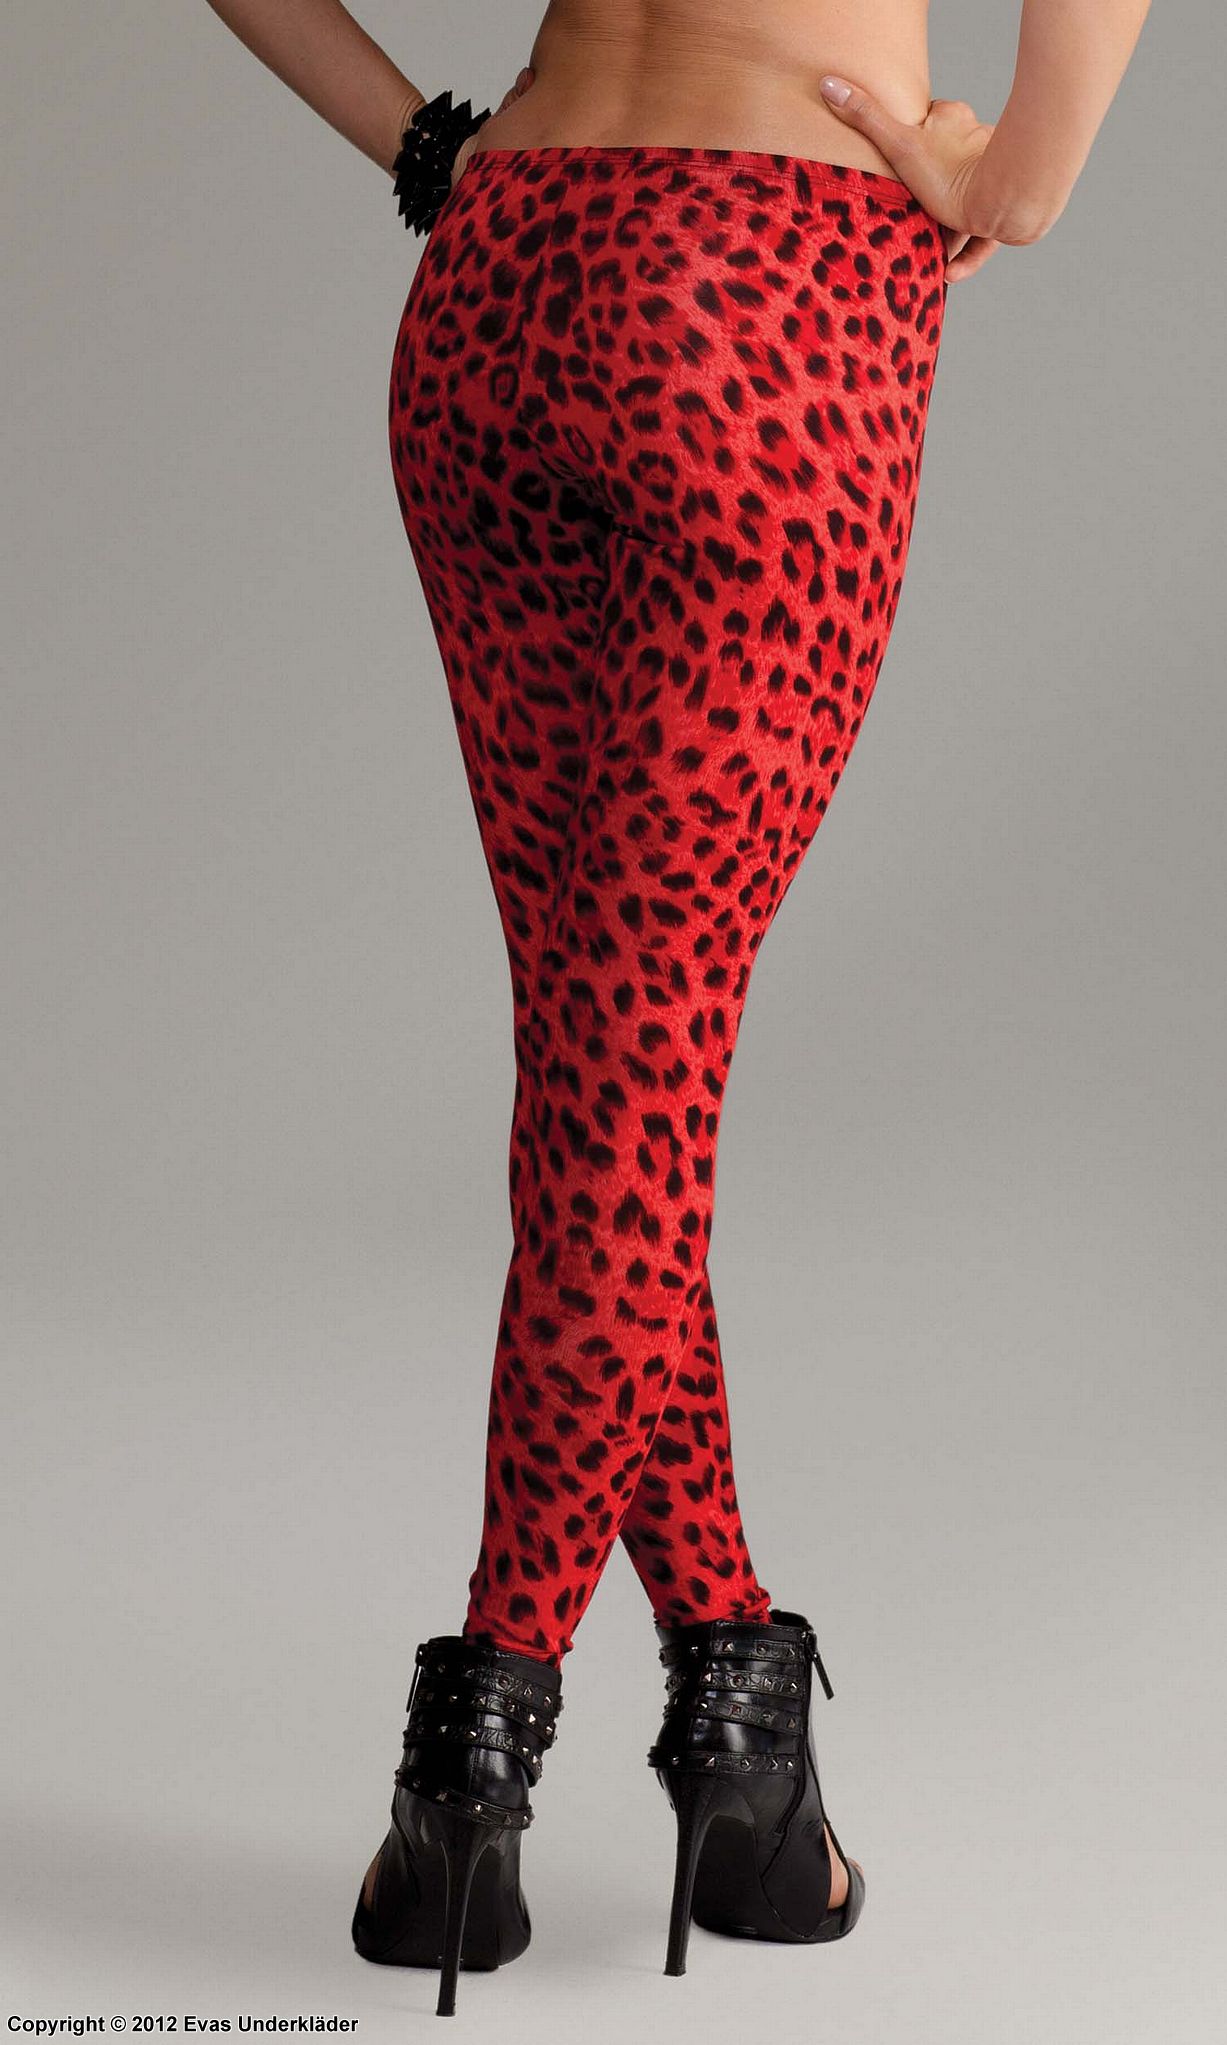 Leopardmönstrade leggings